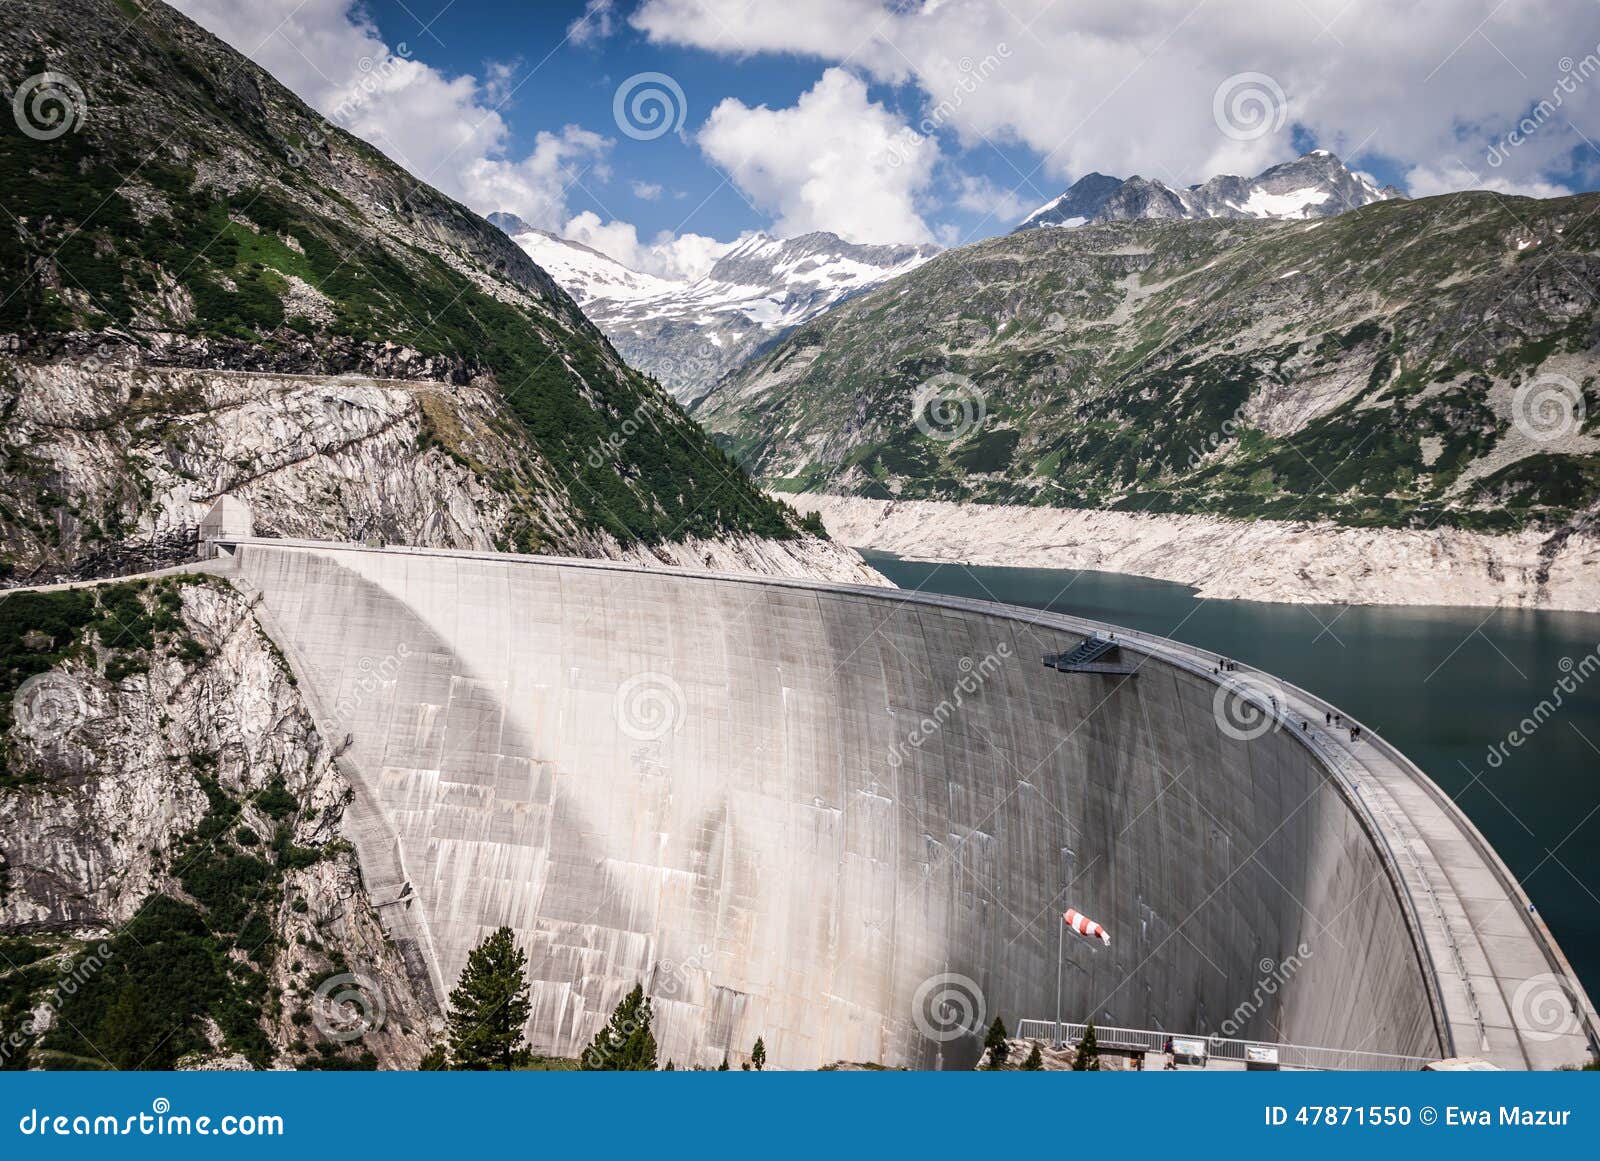 La central eléctrica más alta de la pared- de la presa de Kaprun en Carinthia, Austria